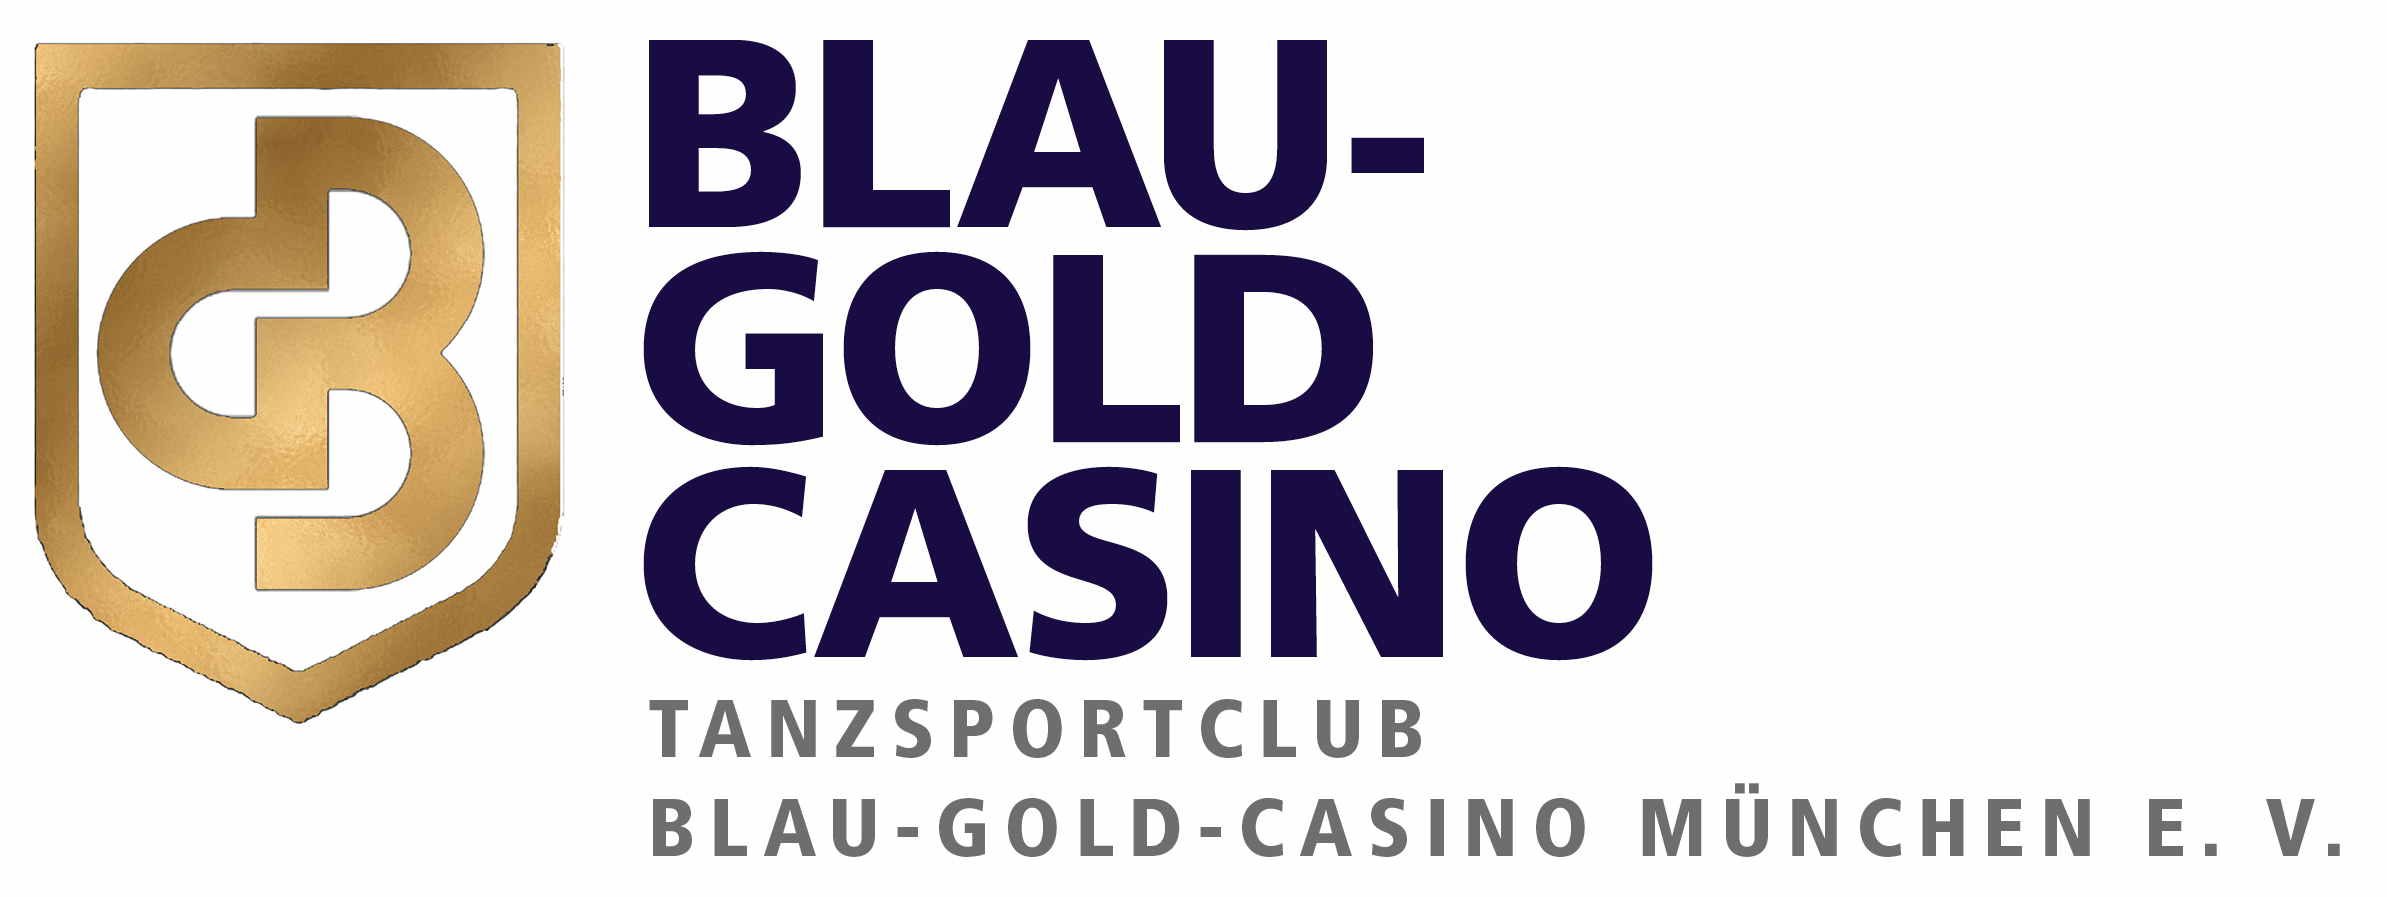 Tanzsportclub Blau-Gold-Casino München e.V.